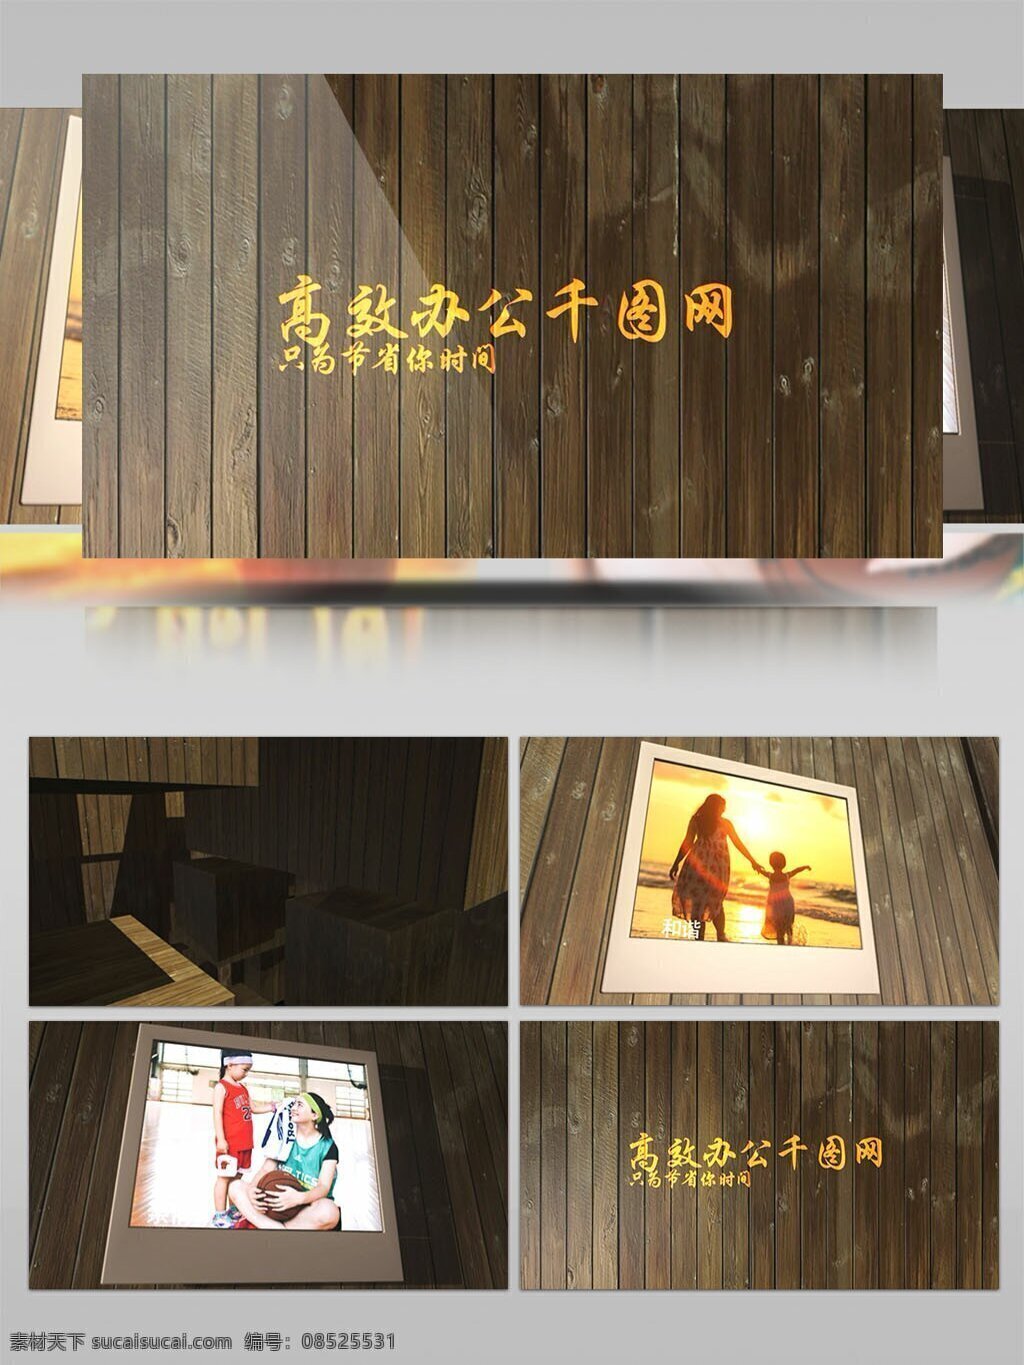 照片 屋 家庭 写真 ae 模板 木板 照片展示 ae模板 aep 木头房子 回忆风